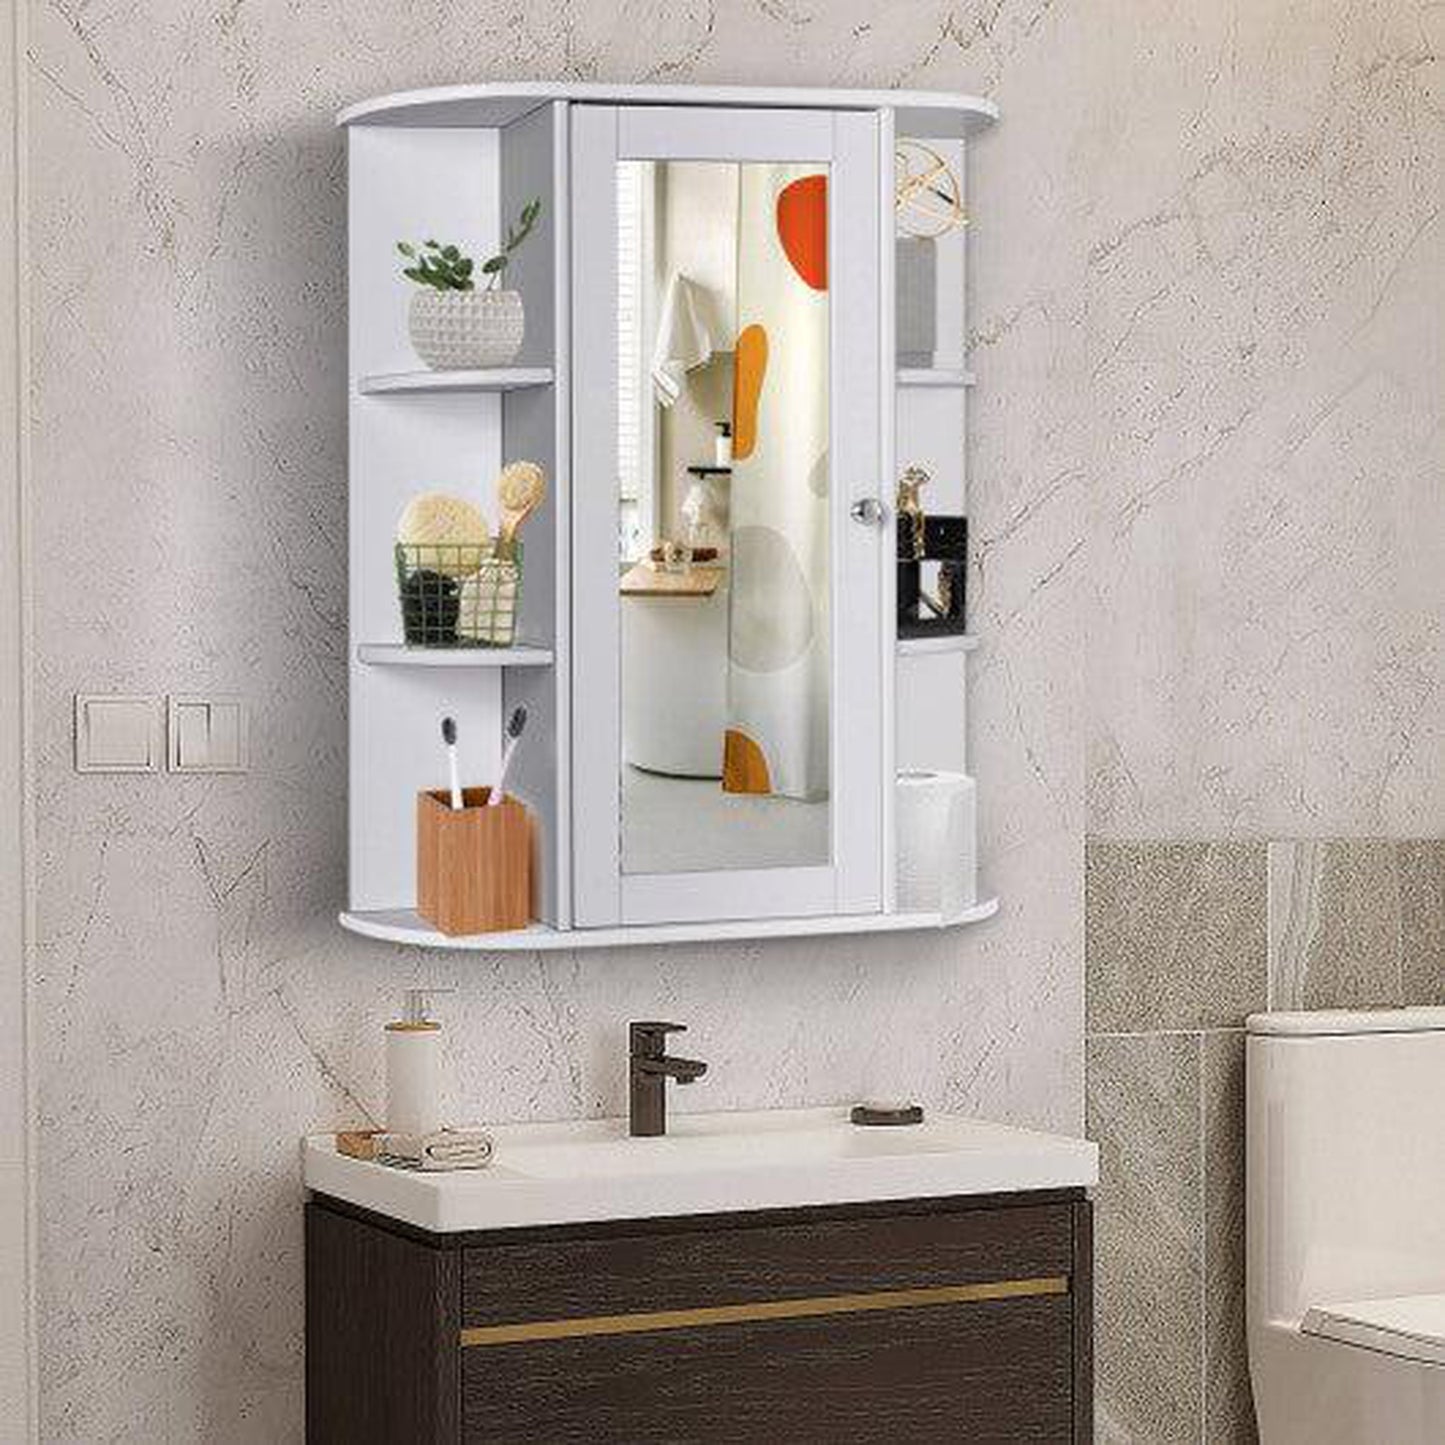 Costway Bathroom Cabinet Single Door Shelves Wall Mount Cabinet